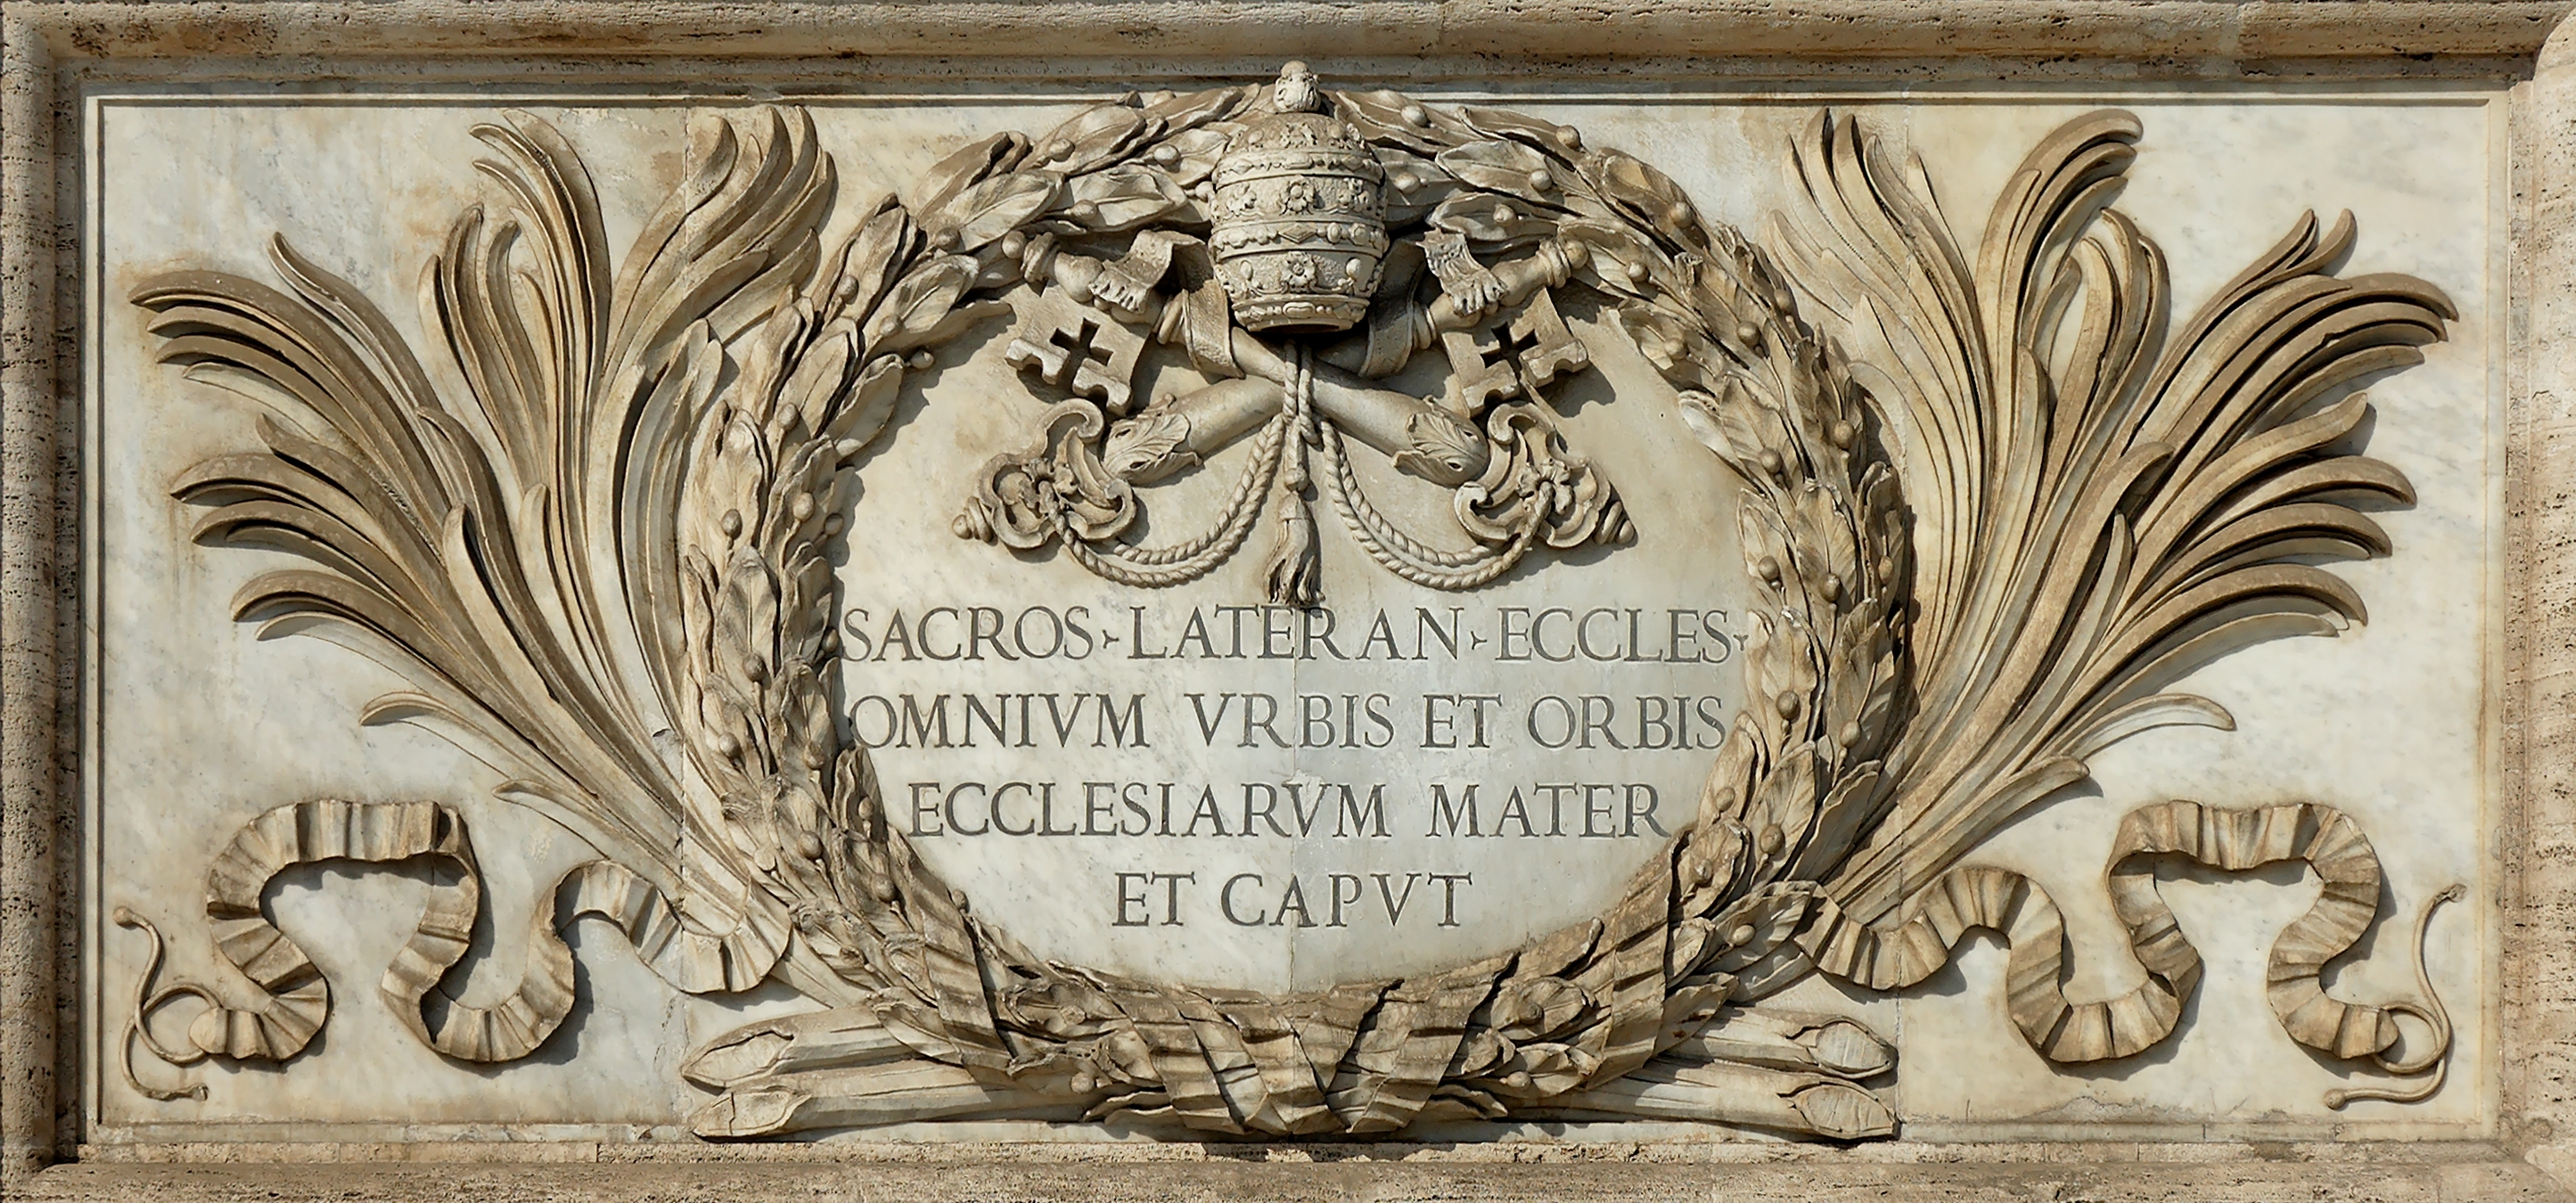 Inscription_Ecclesiarum_Mater_San_Giovanni_in_Laterano_2006-09-07.jpg